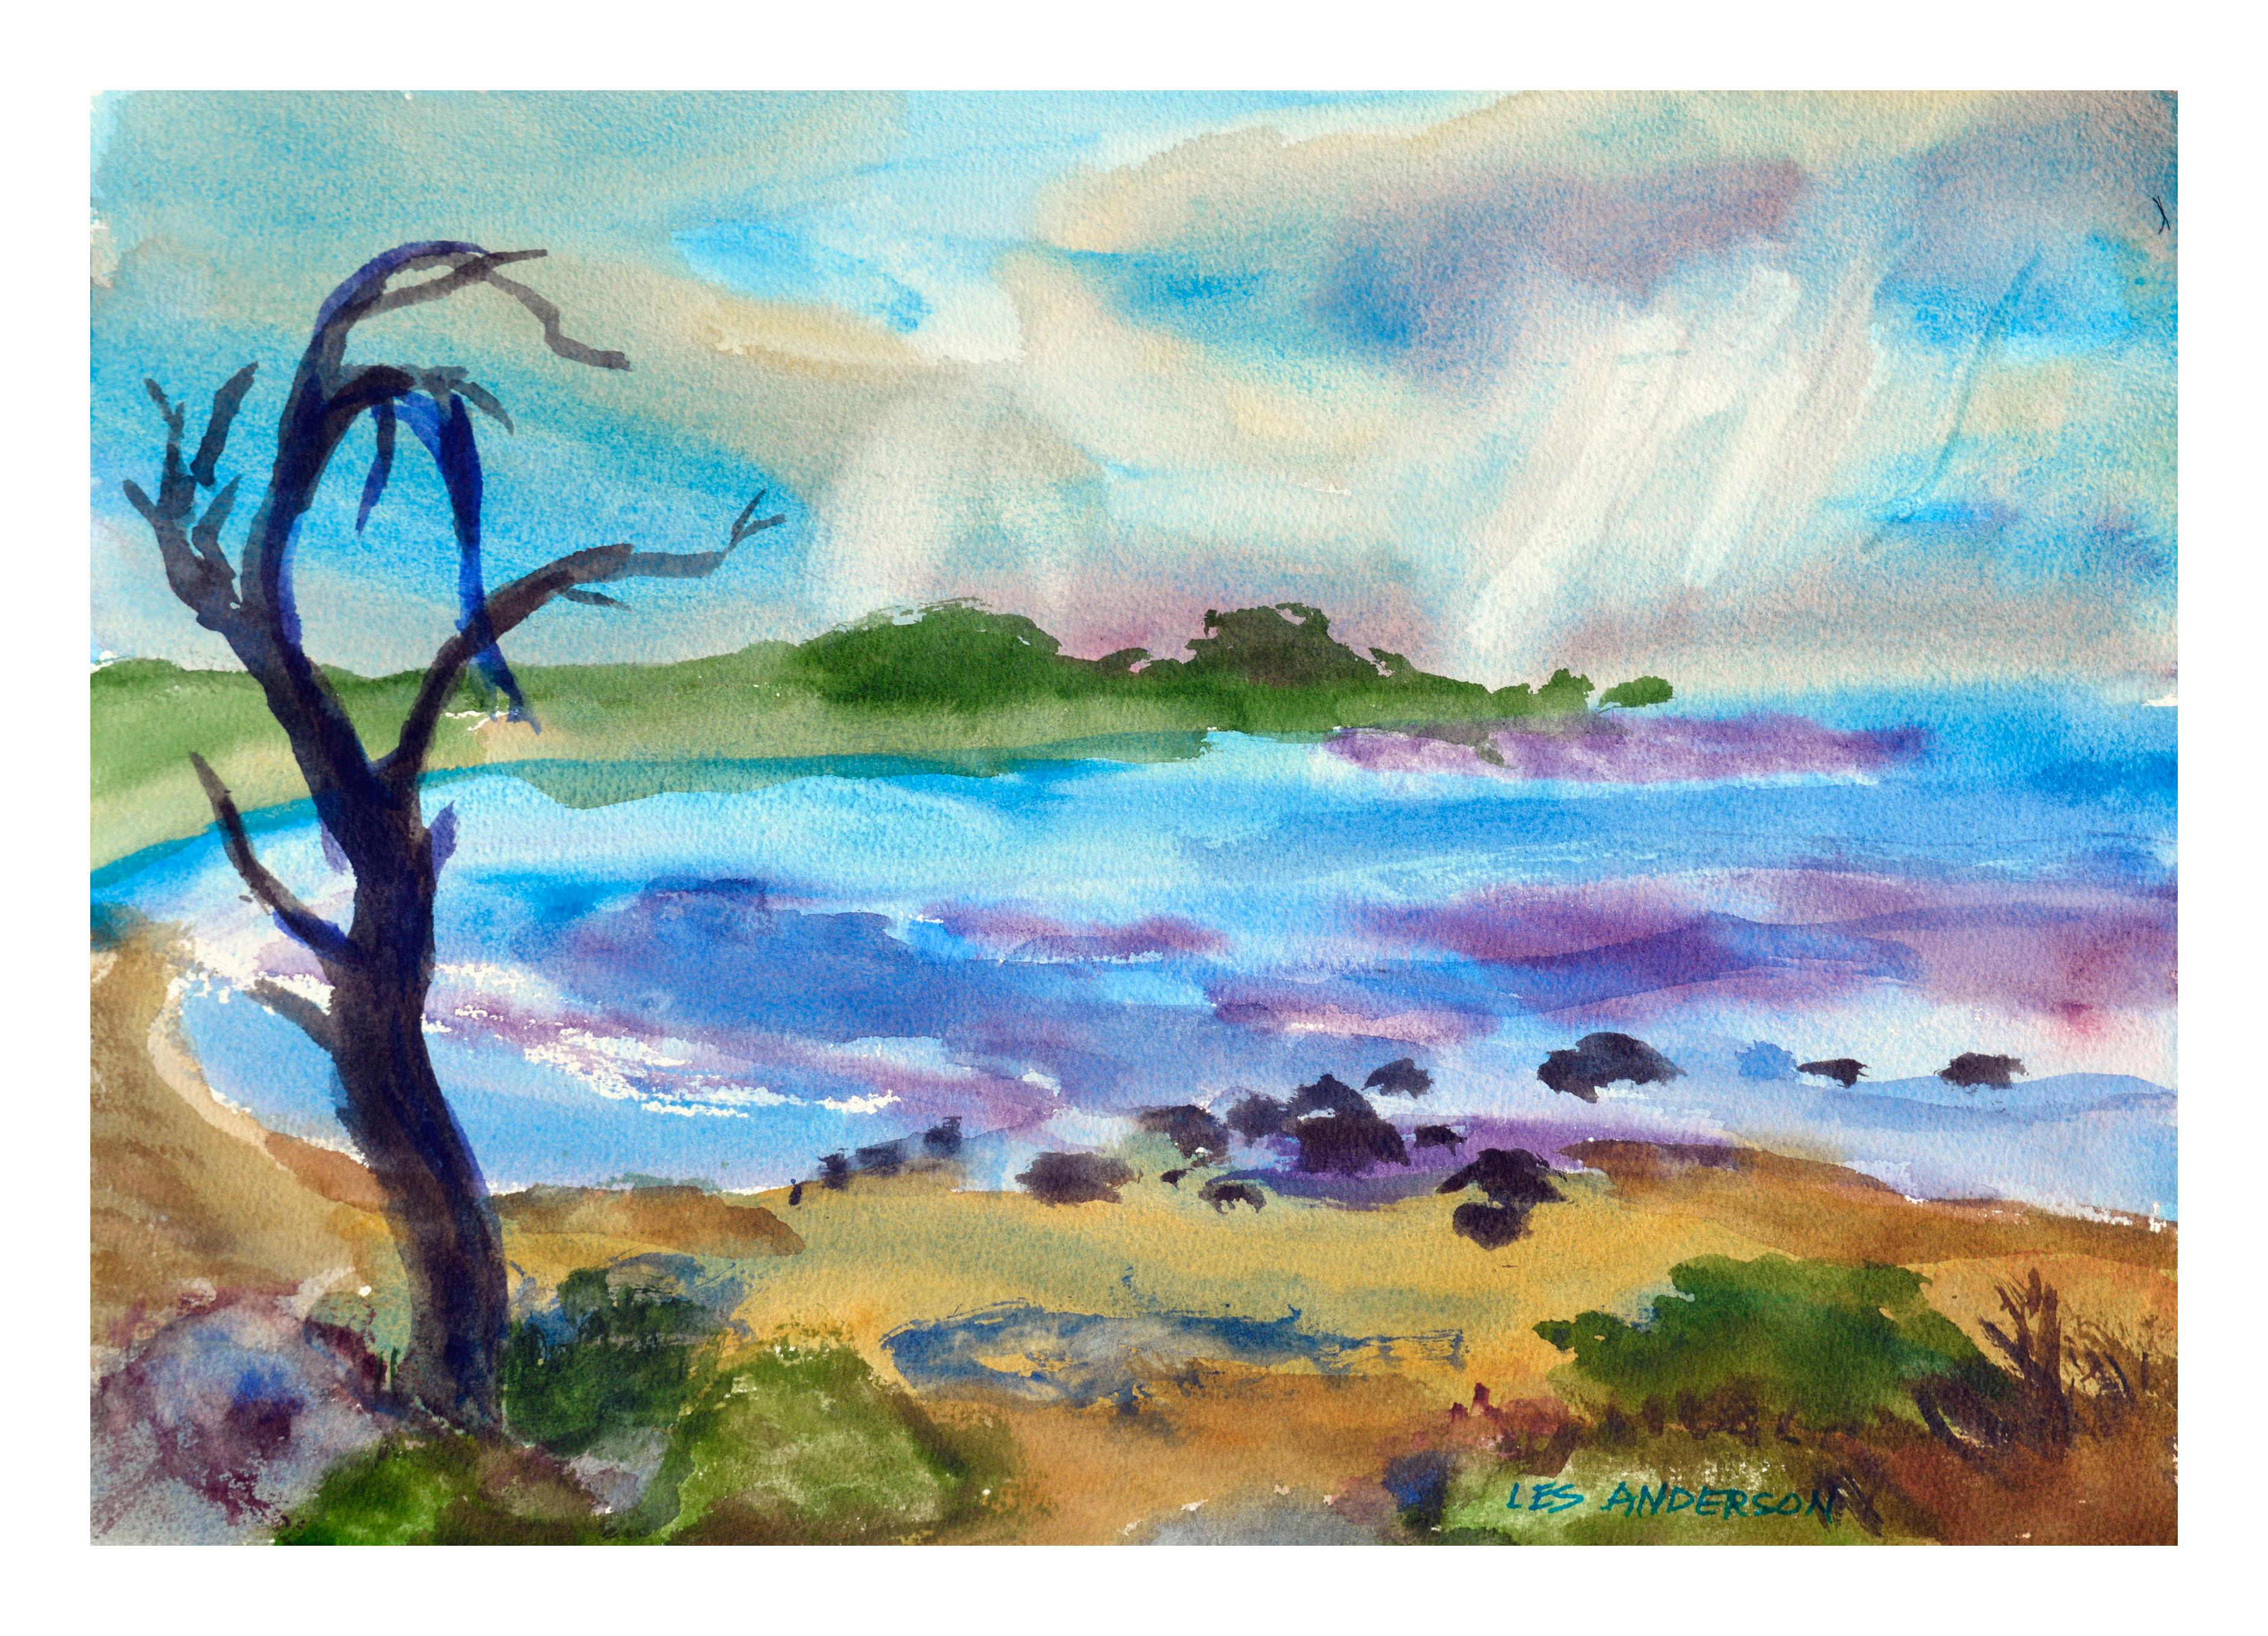 Les Anderson Landscape Art - Violet Bay Seascape